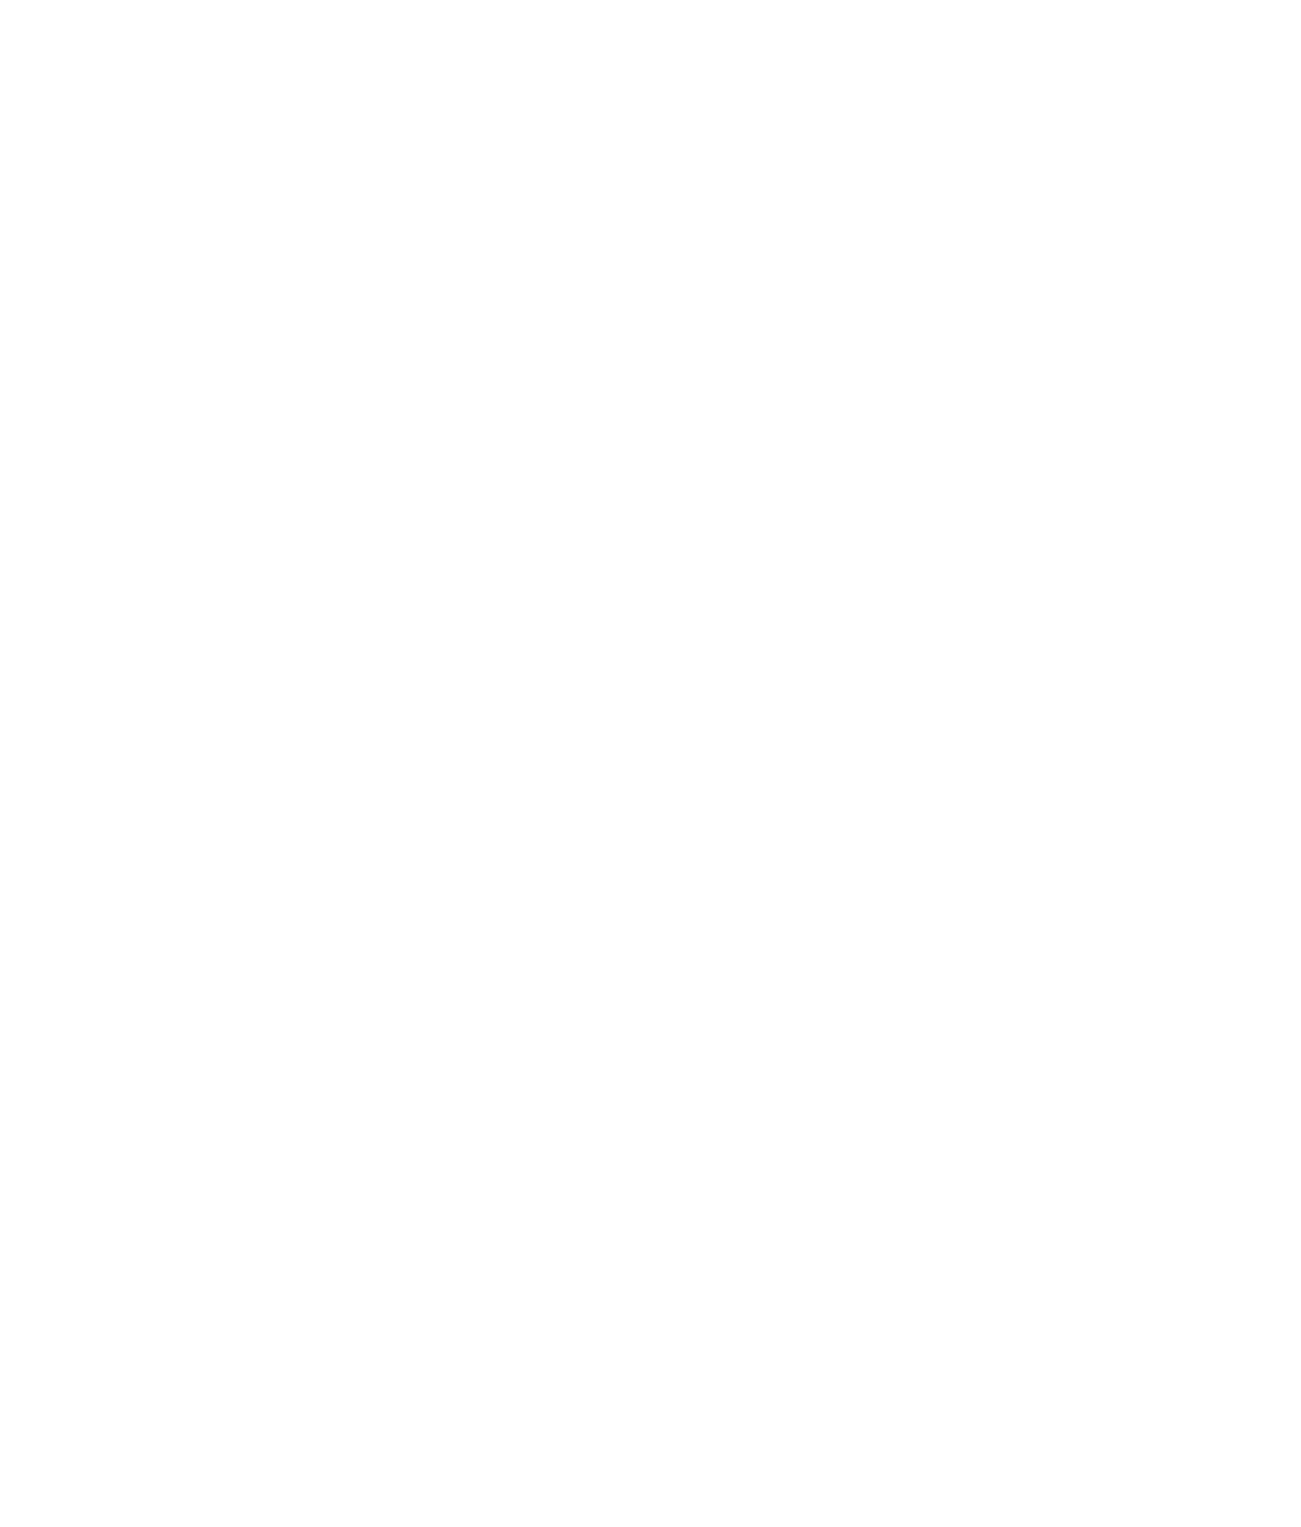 Valkyrie ETF logo for dark backgrounds (transparent PNG)